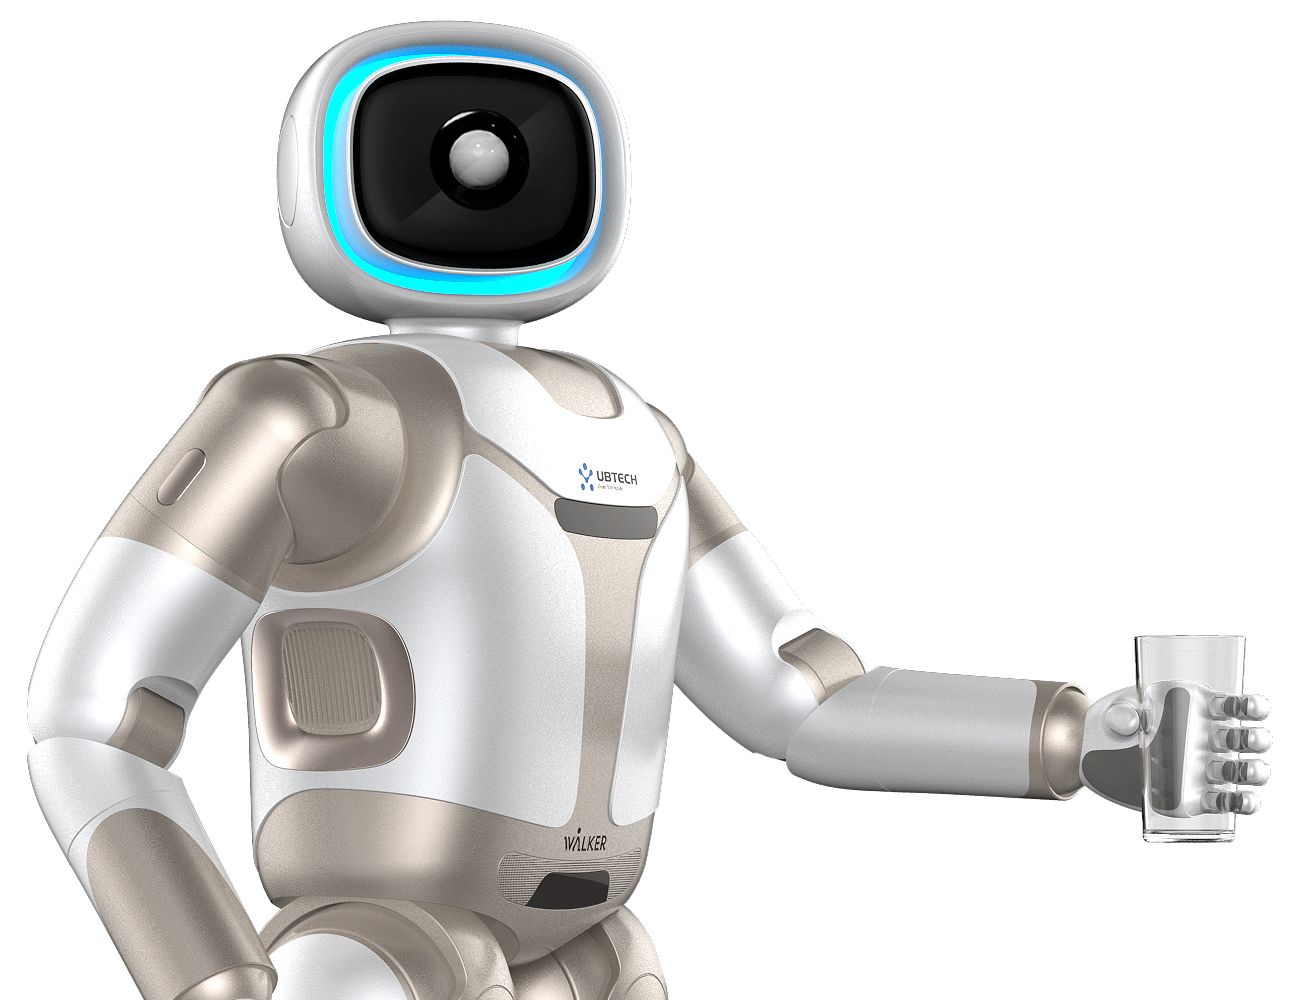 Walker humanoid robot from UBTECH Robotics